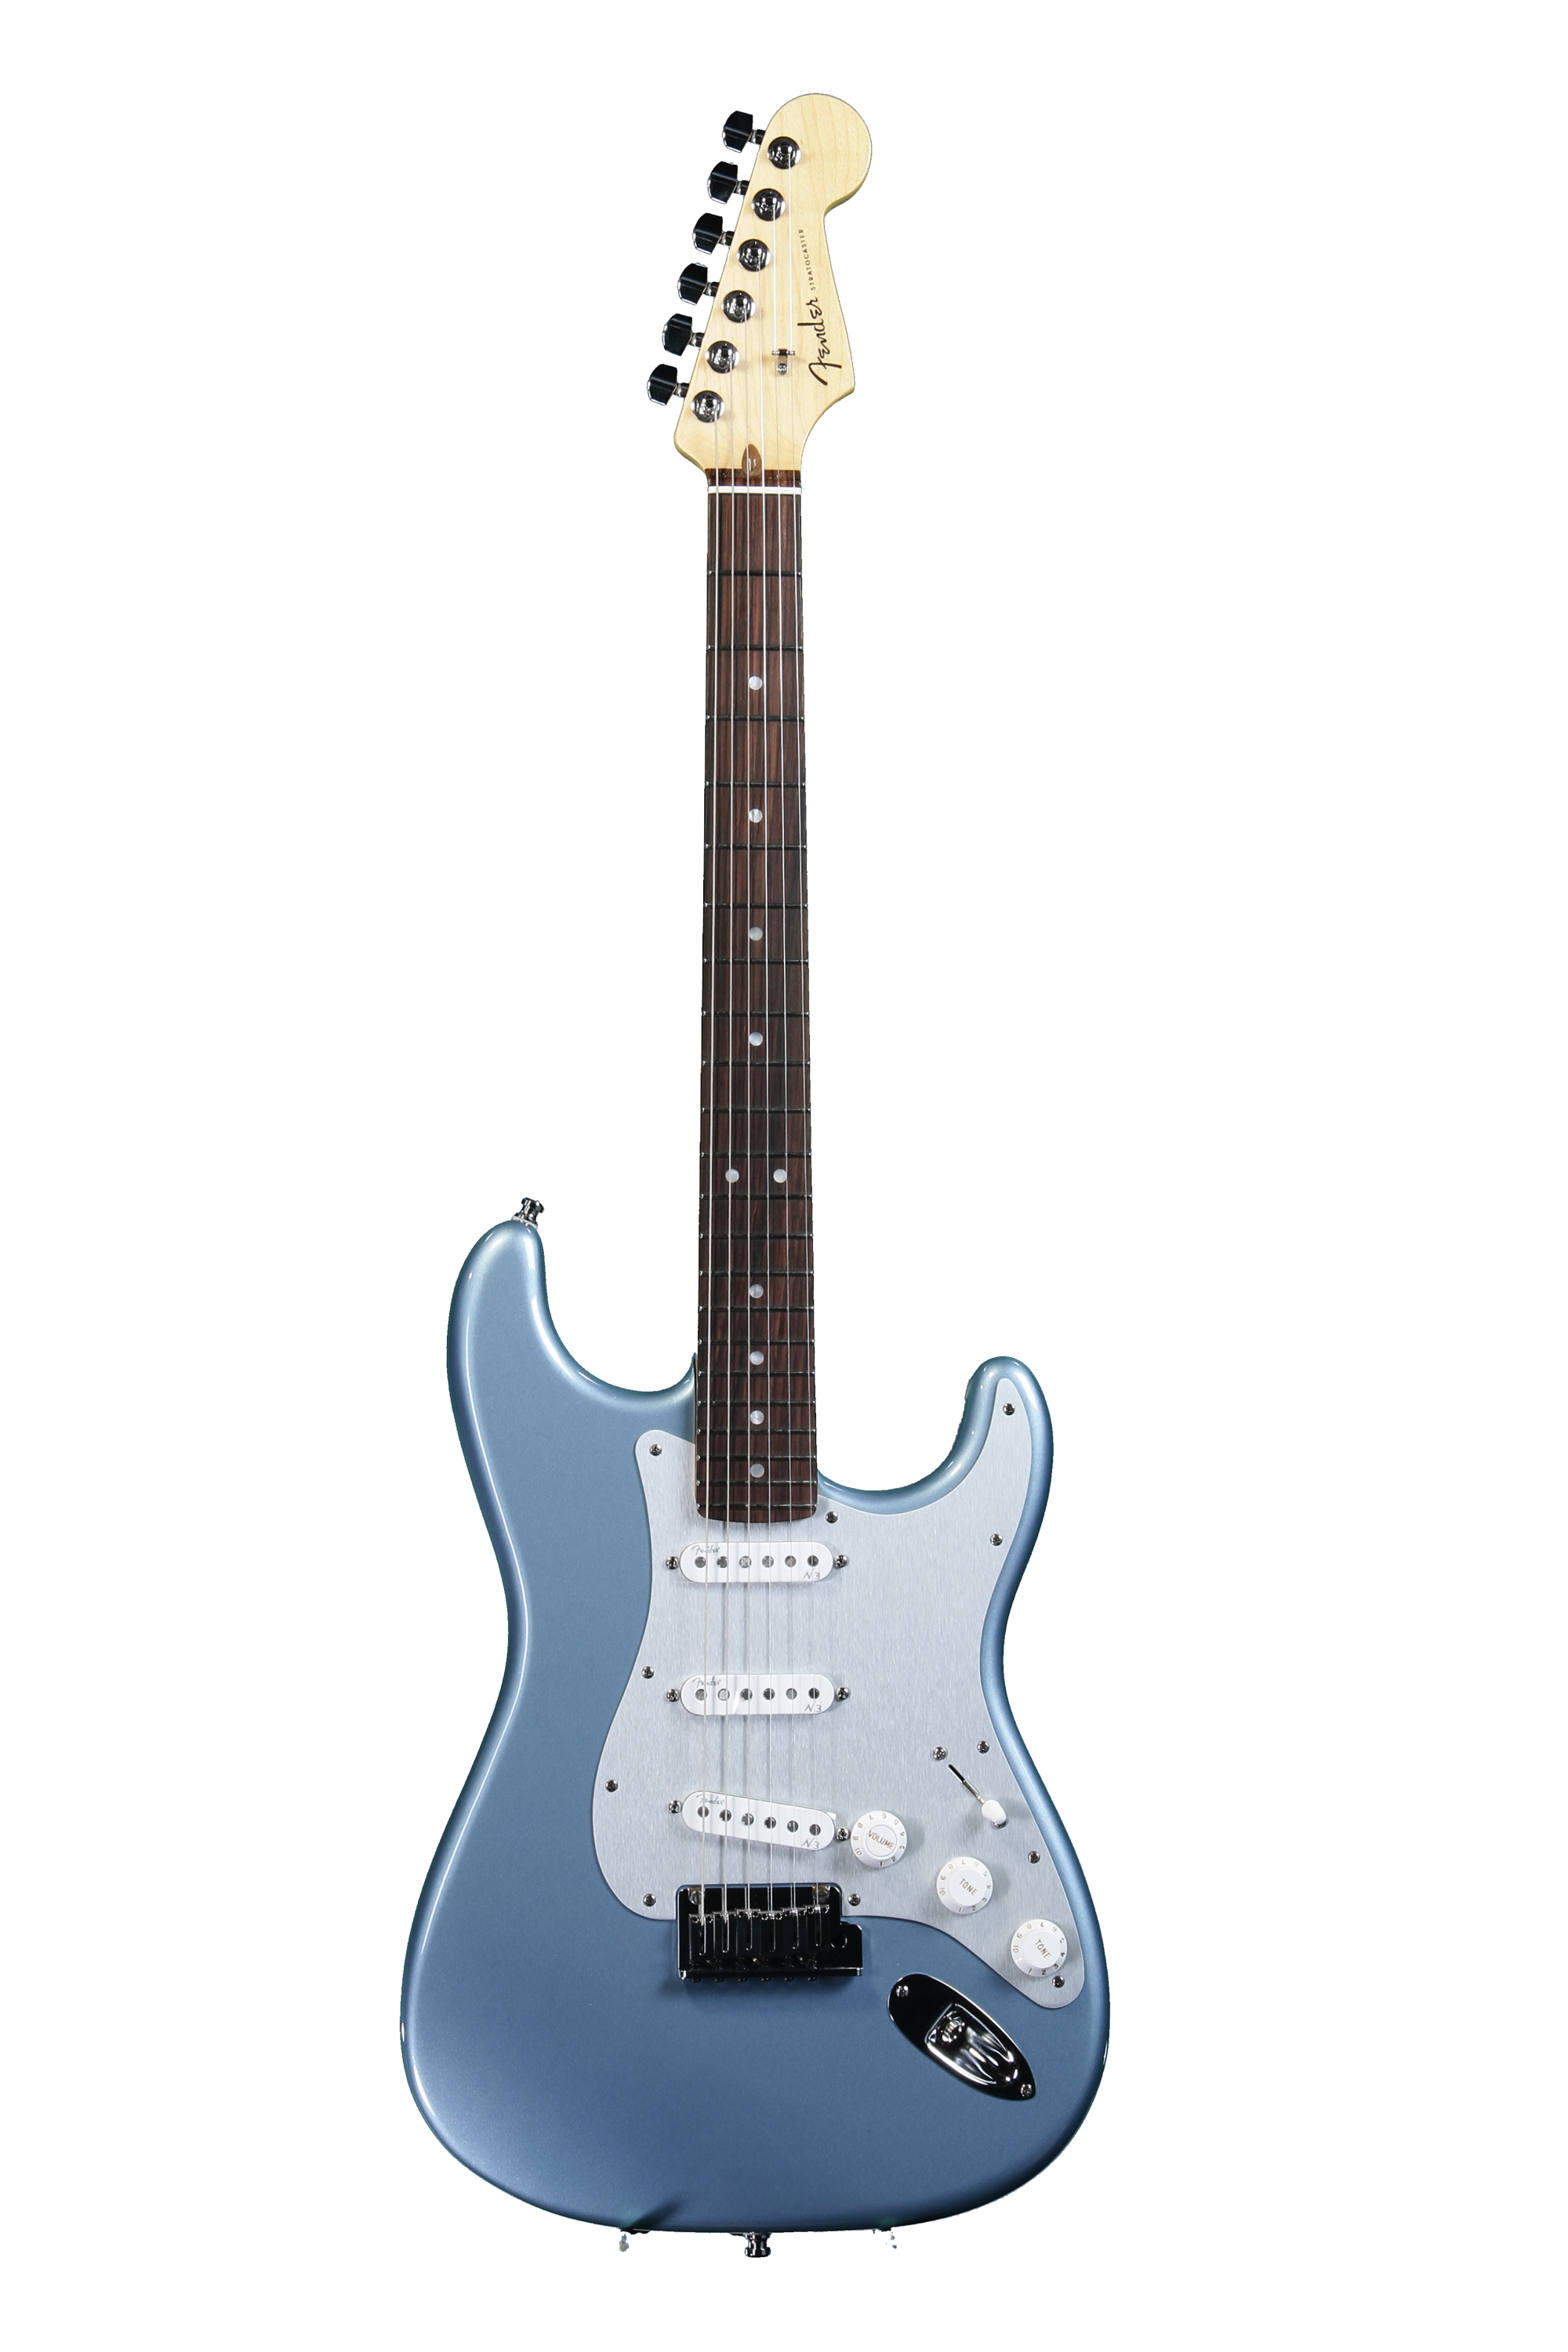 週間売れ筋 Fender American standard stratocaster エレキギター